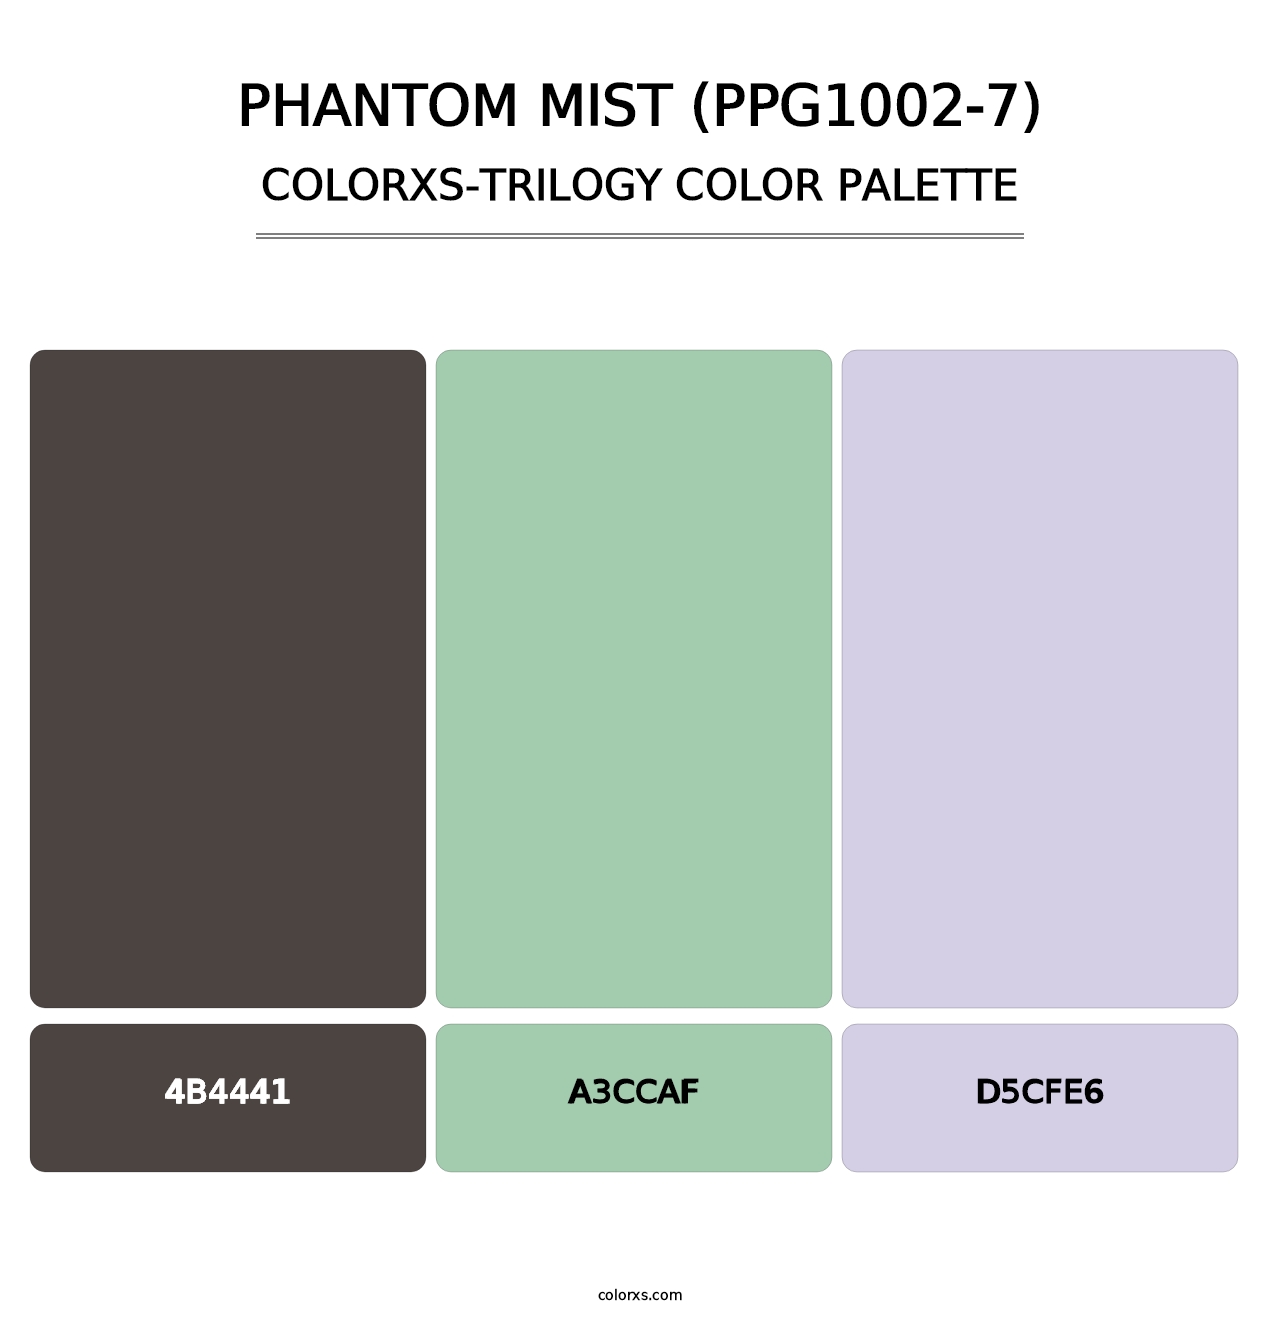 Phantom Mist (PPG1002-7) - Colorxs Trilogy Palette